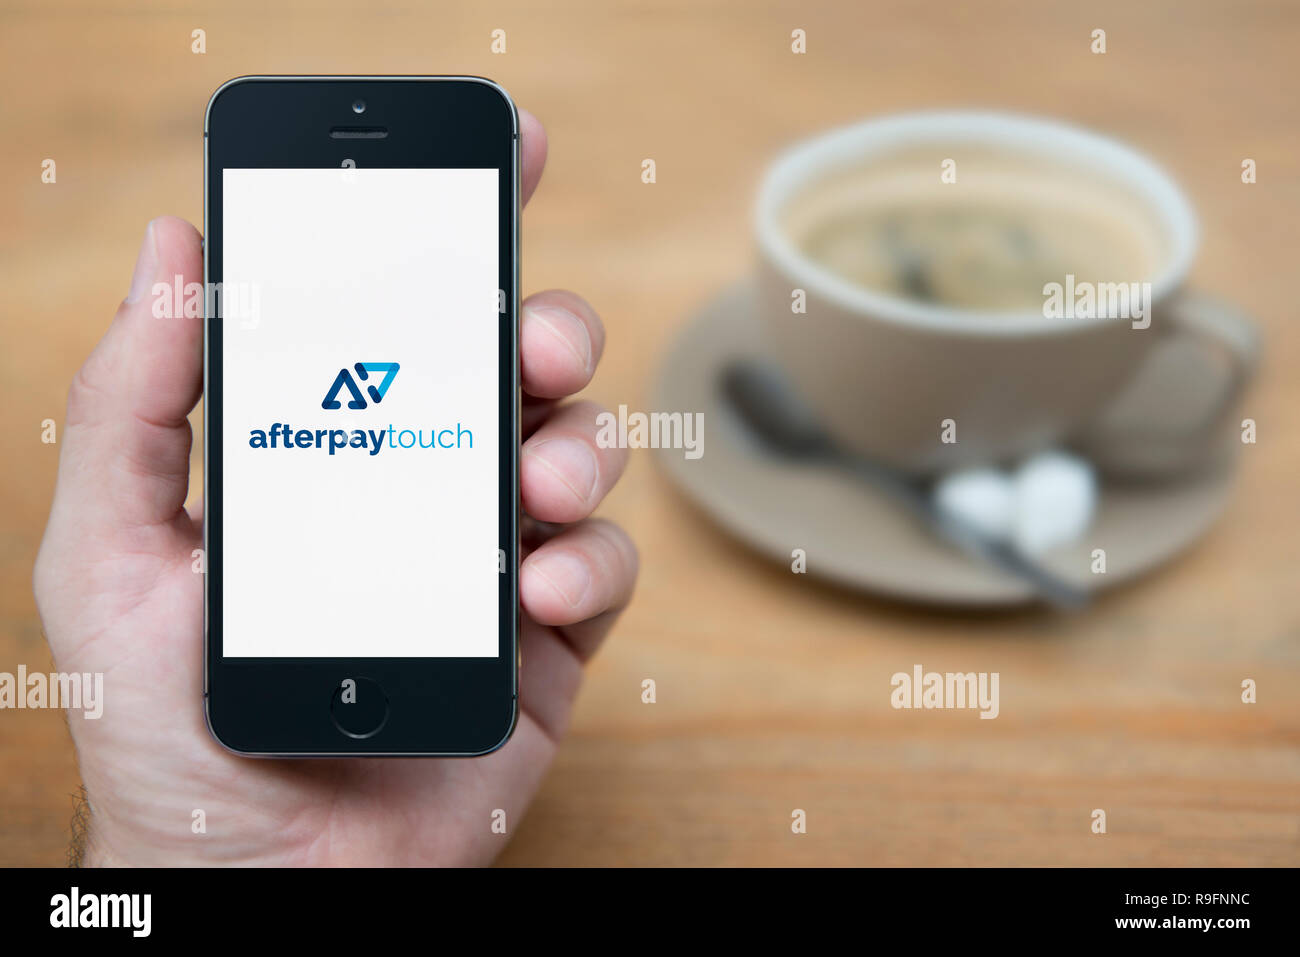 Ein Mann schaut auf seinem iPhone die zeigt die Afterpay Touch Logo (nur redaktionelle Nutzung). Stockfoto